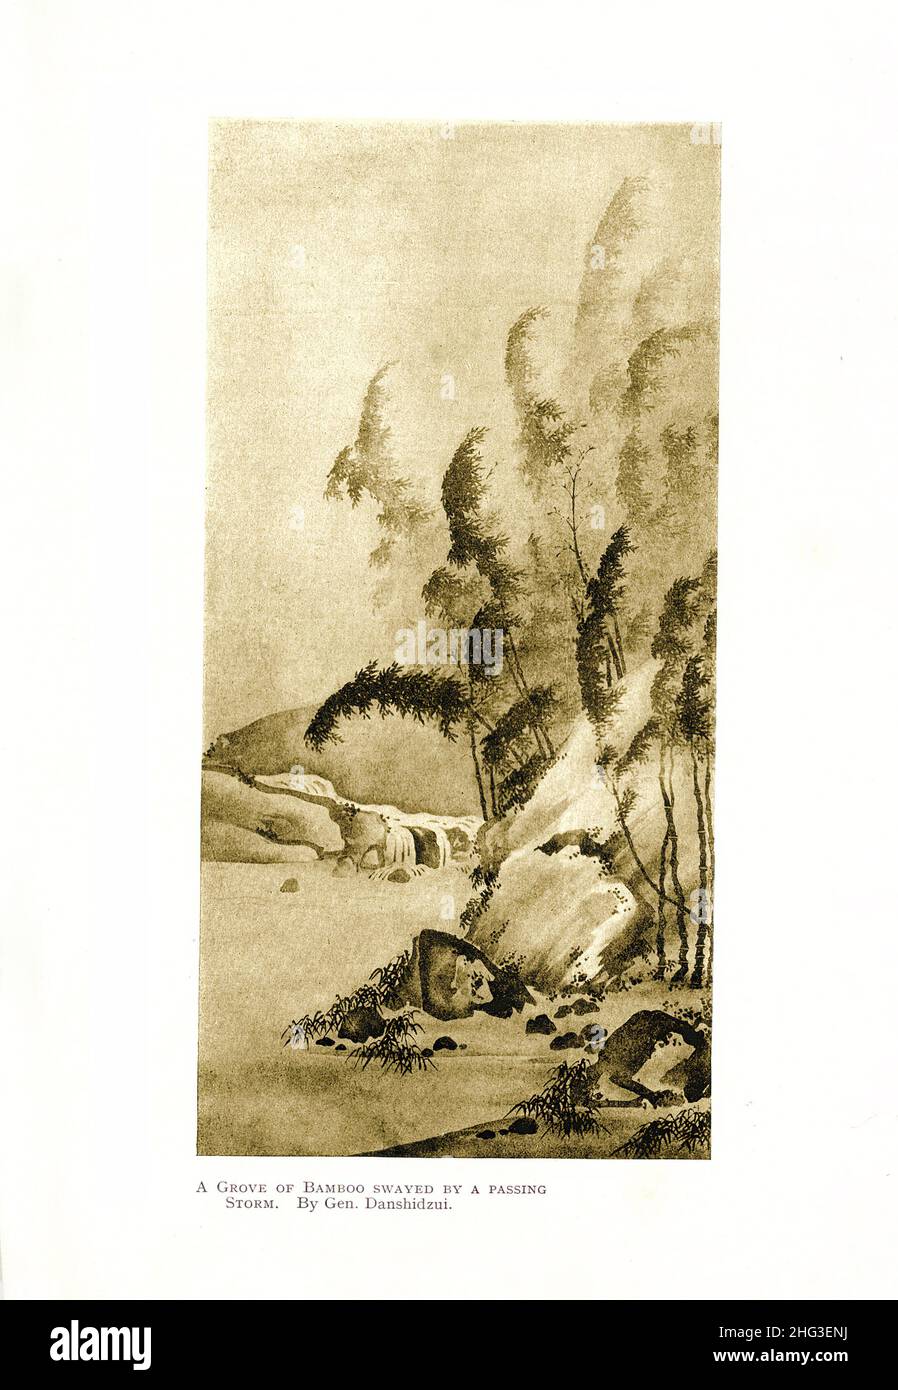 Chinesische mittelalterliche Malerei: Ein Bambushain, der von Einem vorübergehenden Sturm beeinflusst wird. Von General Danshidzui. Reproduktion der Buchdarstellung von 1912 Stockfoto